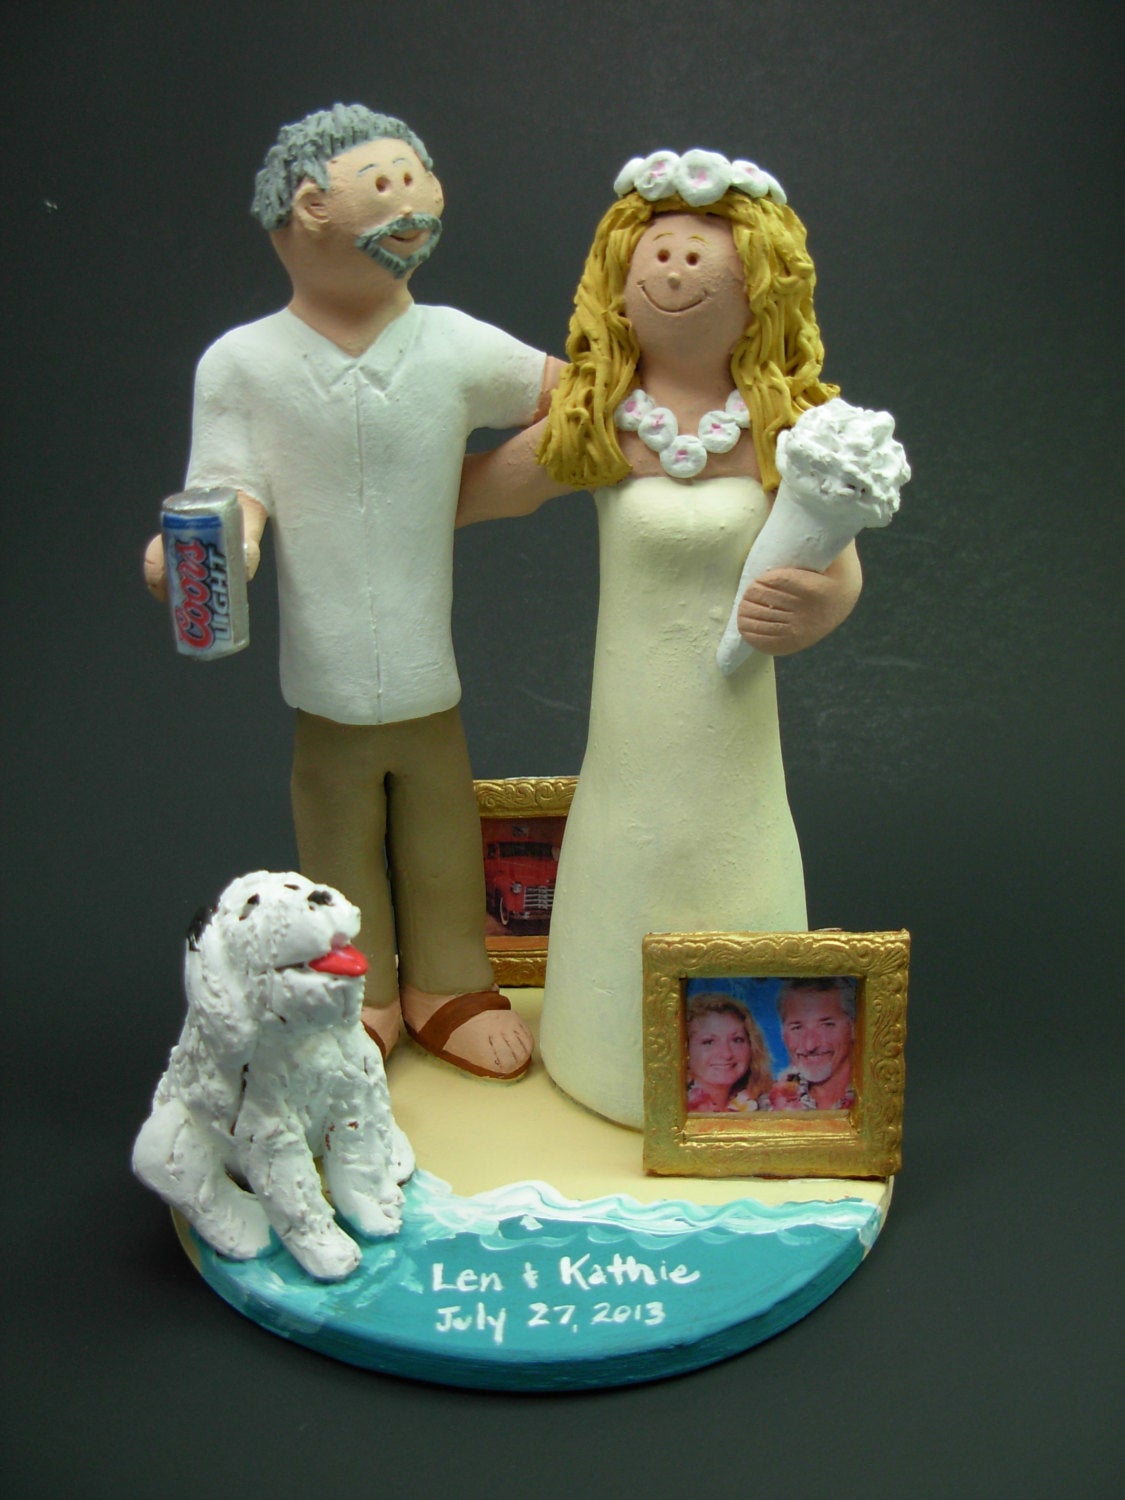 Bridal Shower Cakes | Bridal Cake | Adult Cake | Mr Cake